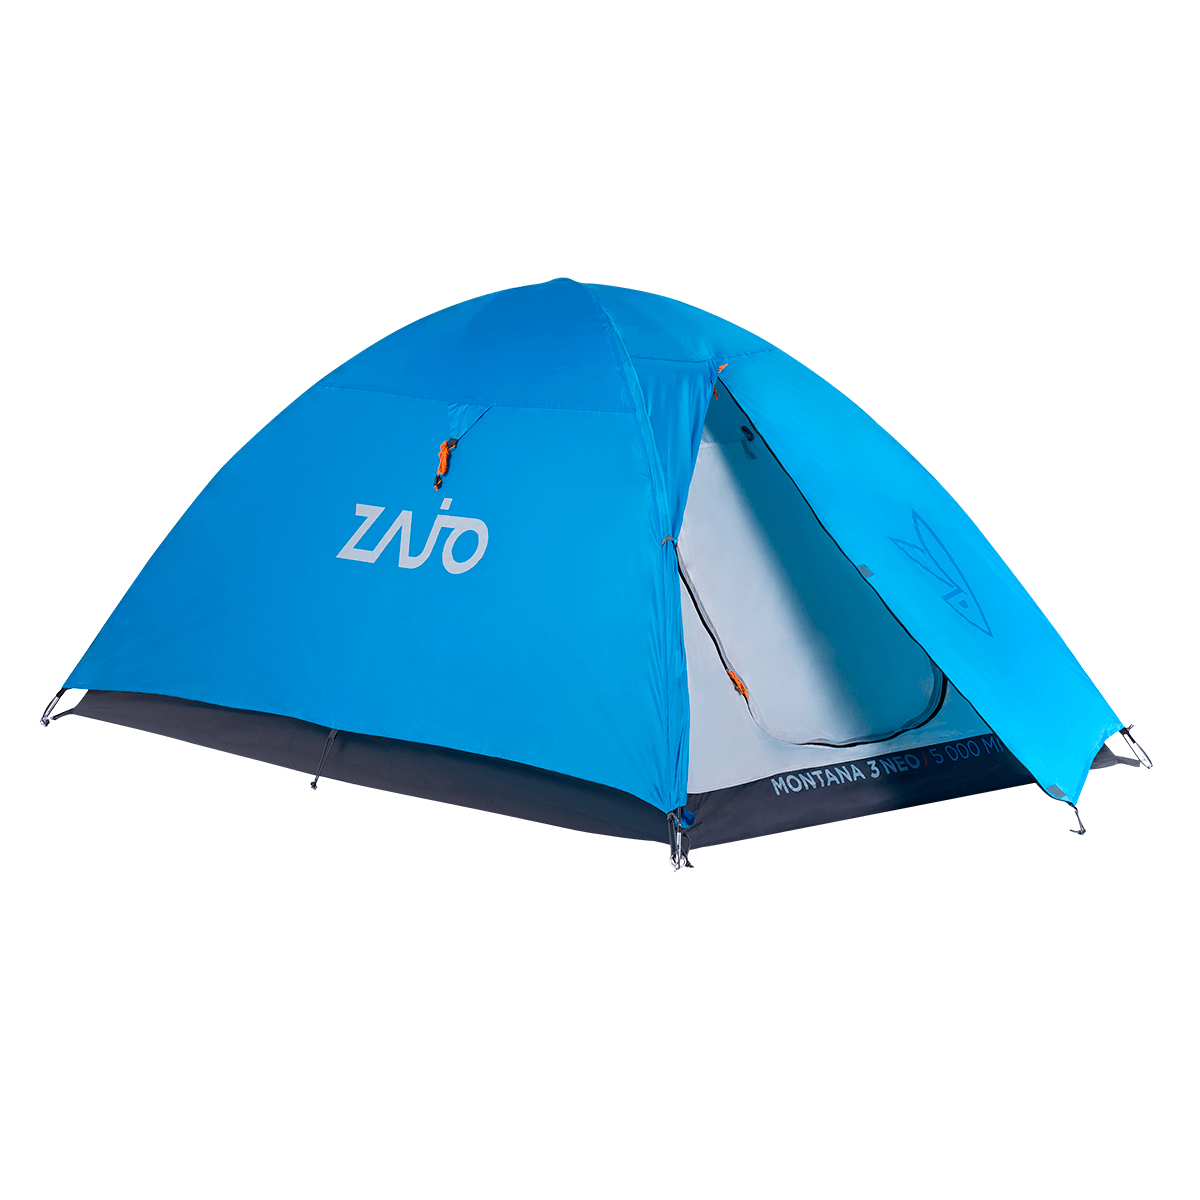 Stany Zajo Montana 3 Tent